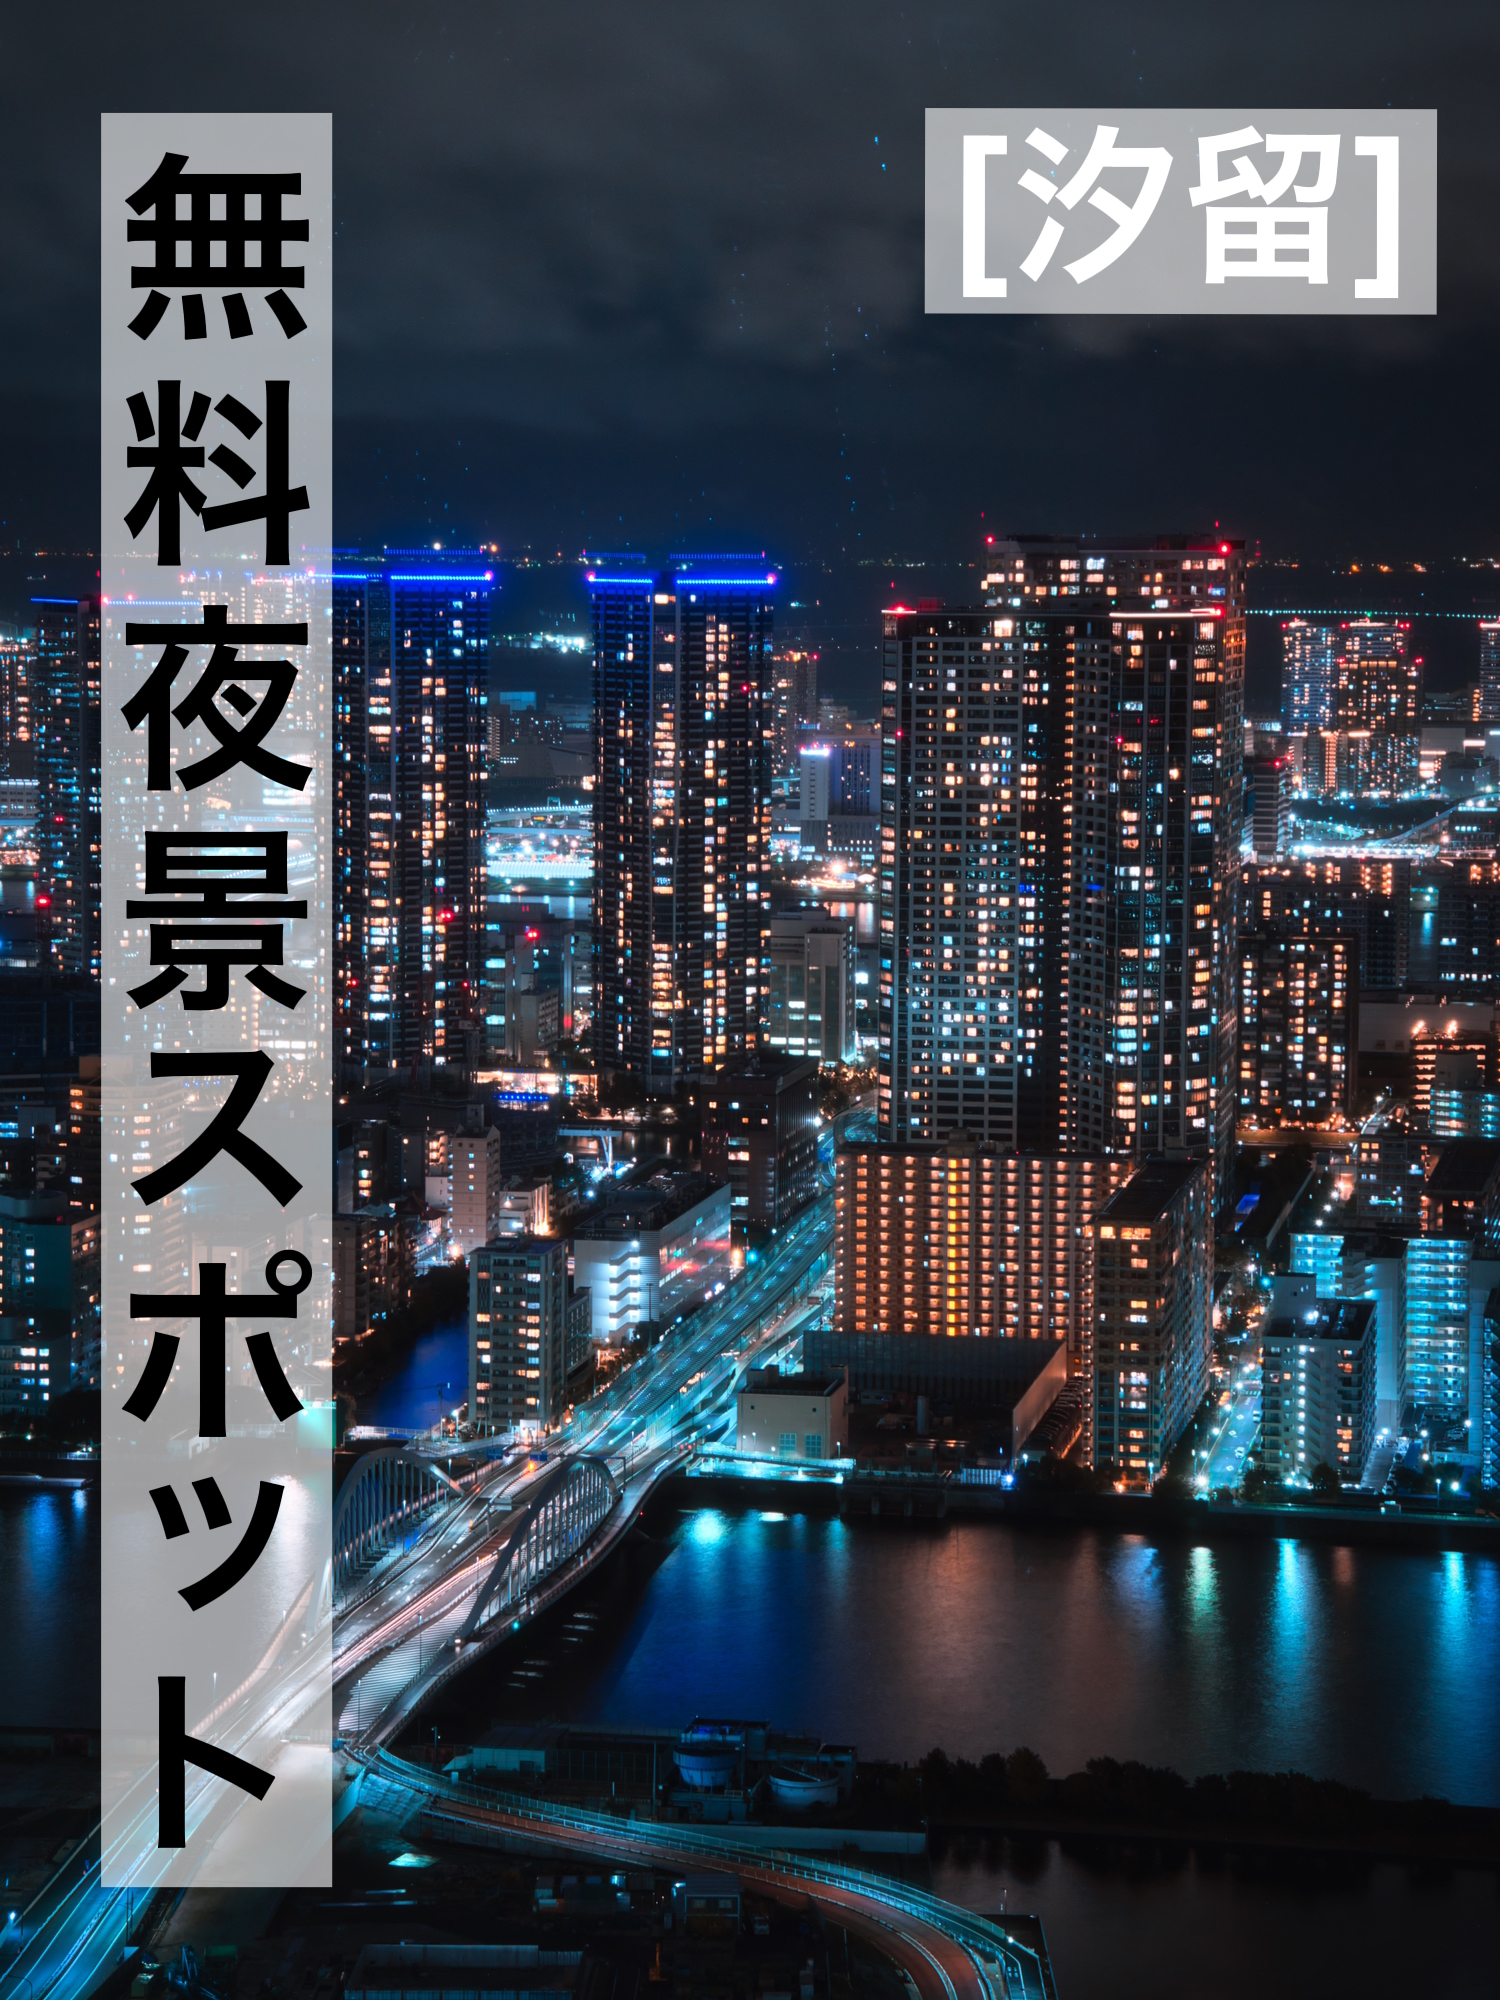 東京 無料夜景スポット Minat Akaが投稿したフォトブック Lemon8